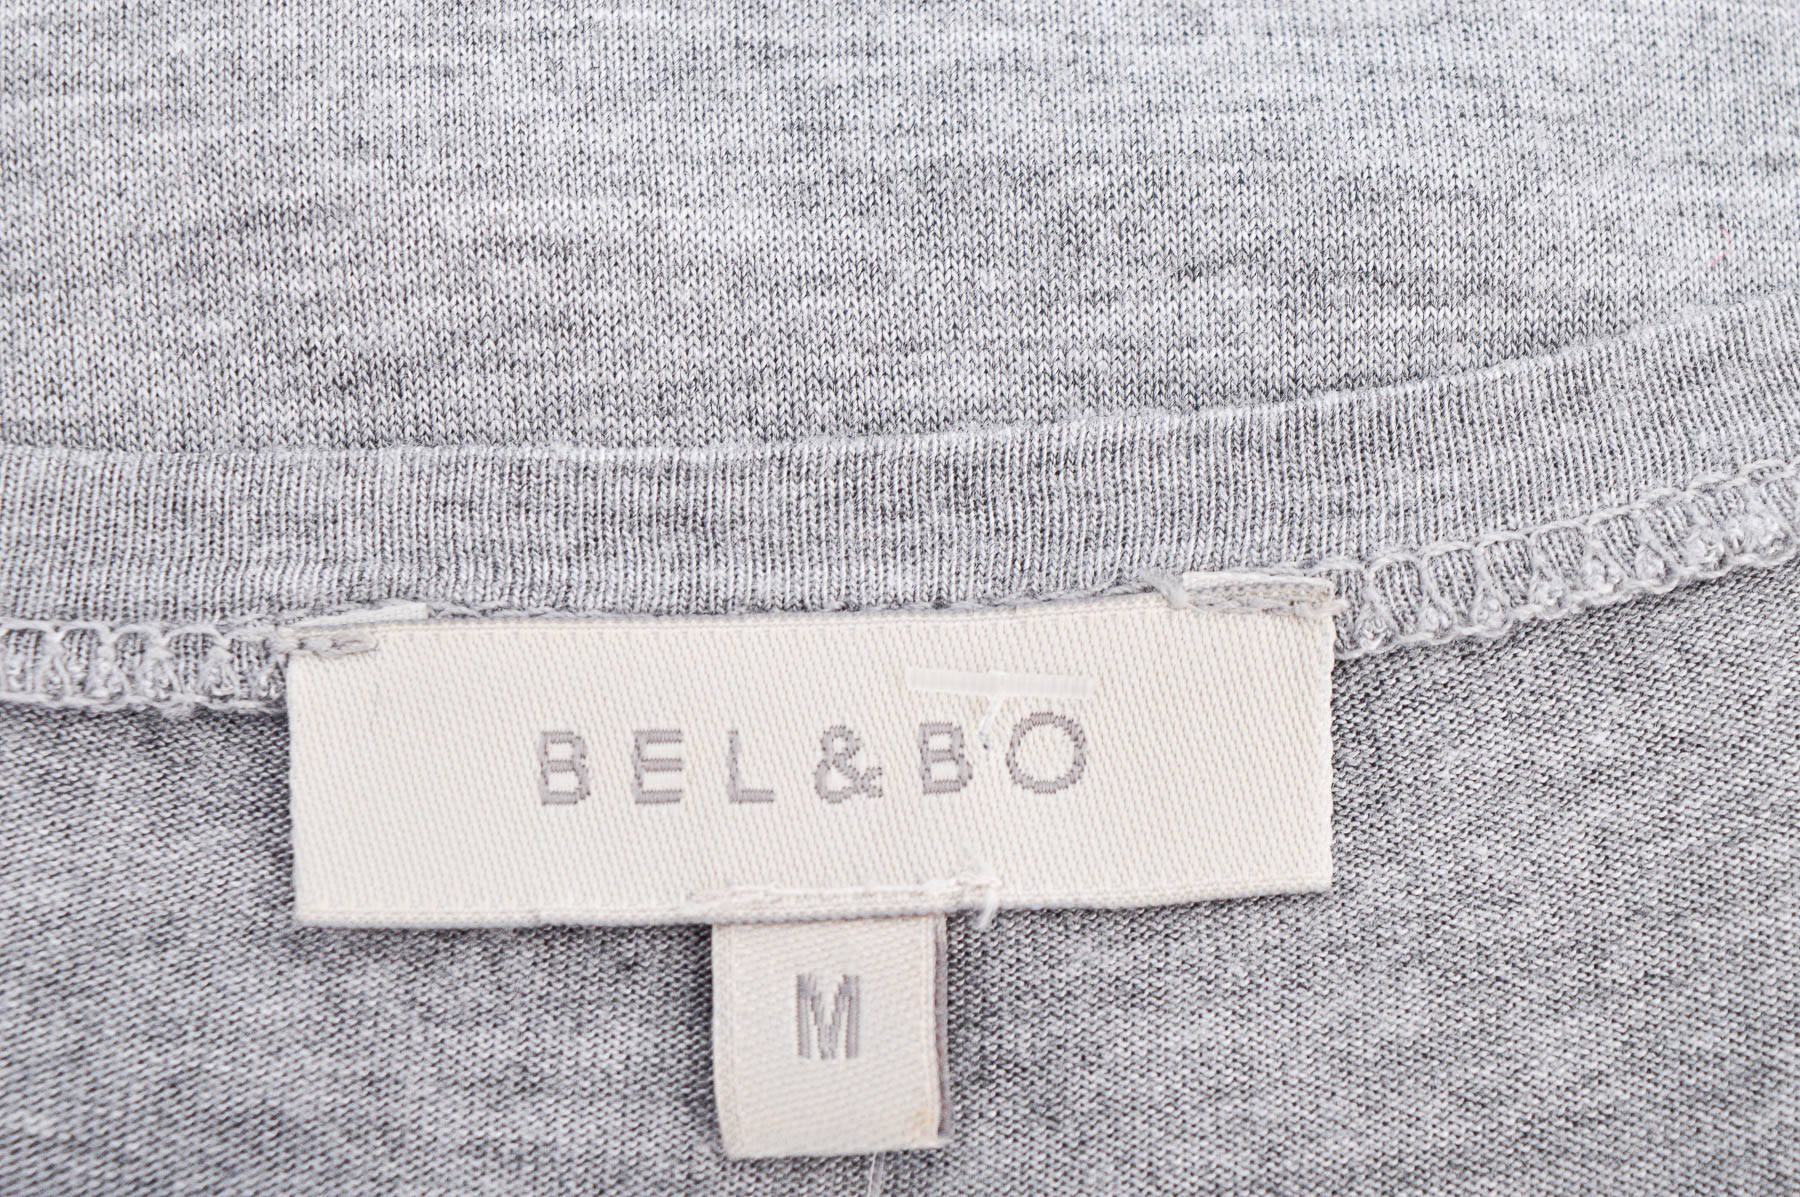 Γυναικεία μπλούζα - Bel&Bo - 2